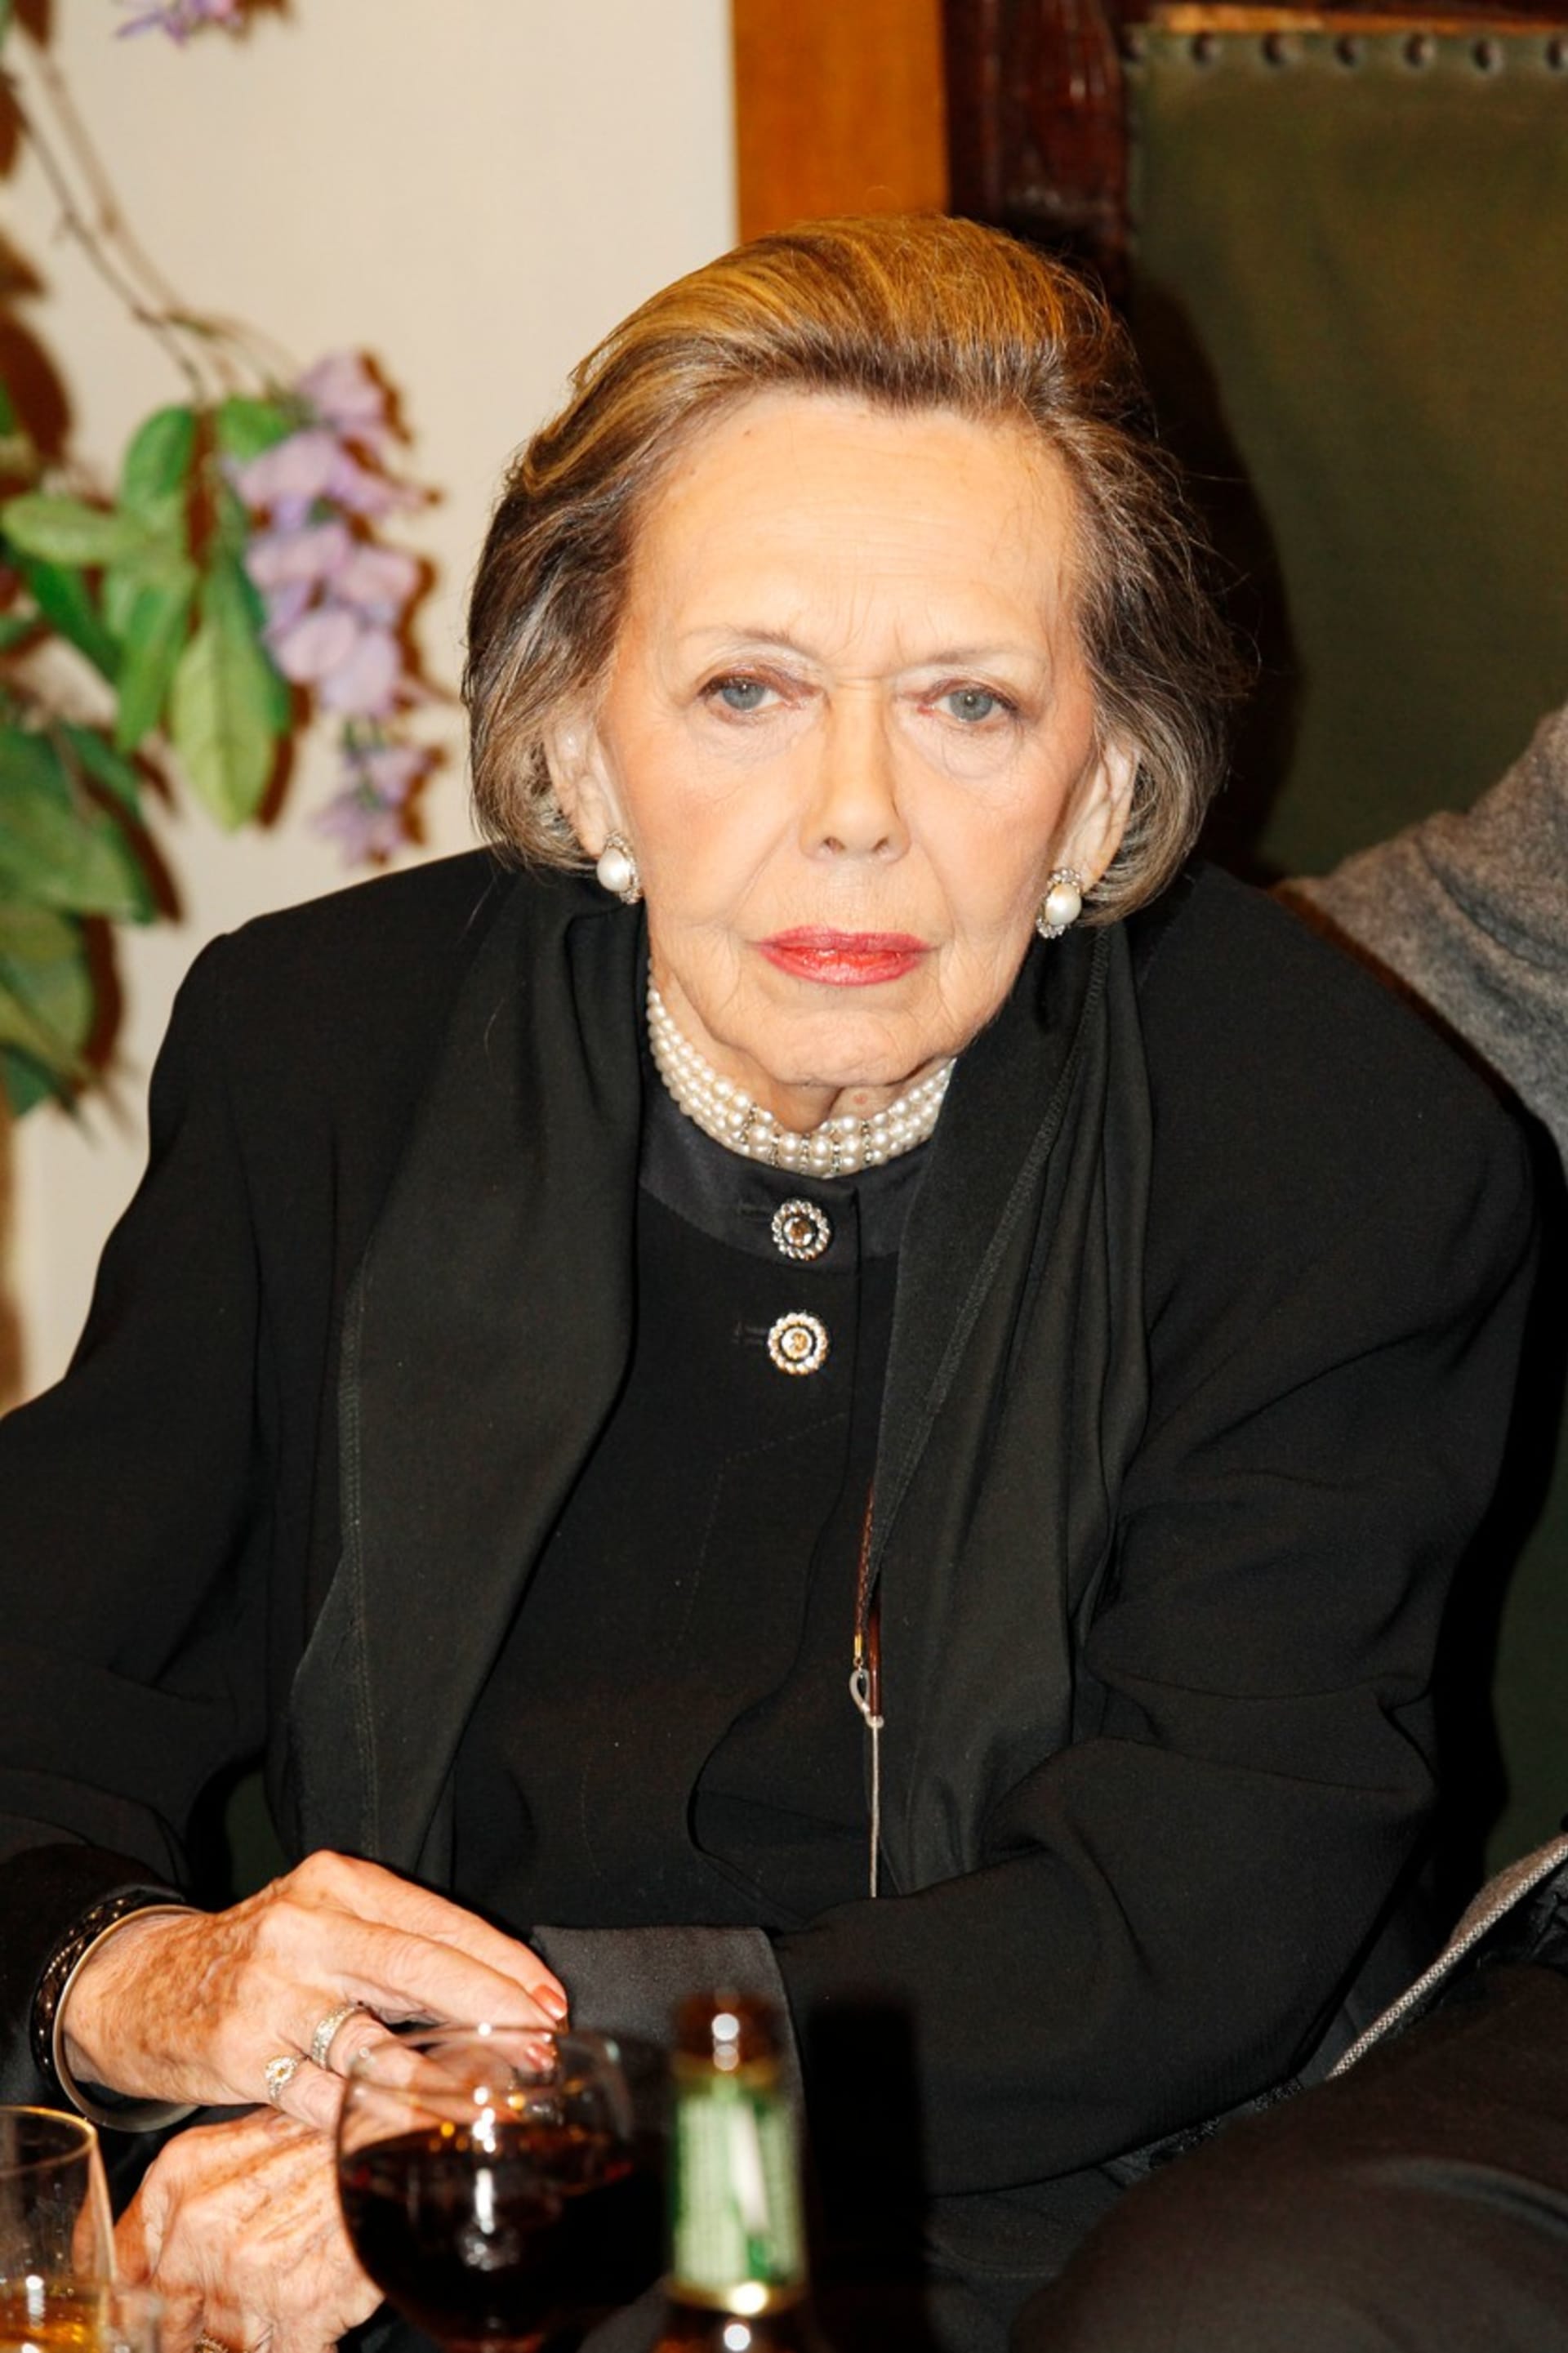 Herečka Jiřina Jirásková měla hodně mužů. Zásadní vztah prožila i s citlivým hercem Vlastimilem Brodským